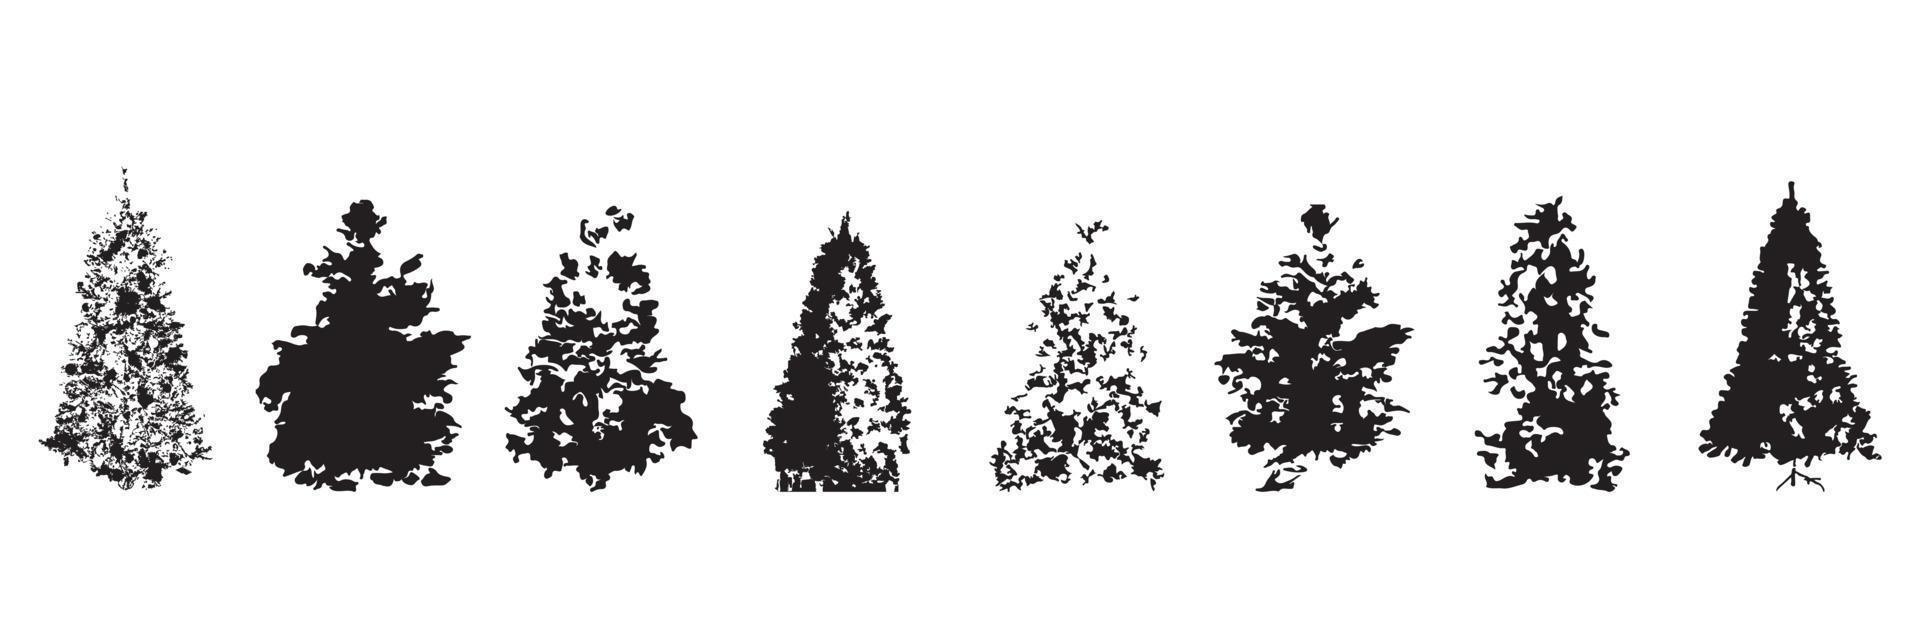 Weihnachten Bäume Silhouette auf Weiß Hintergrund. vektor